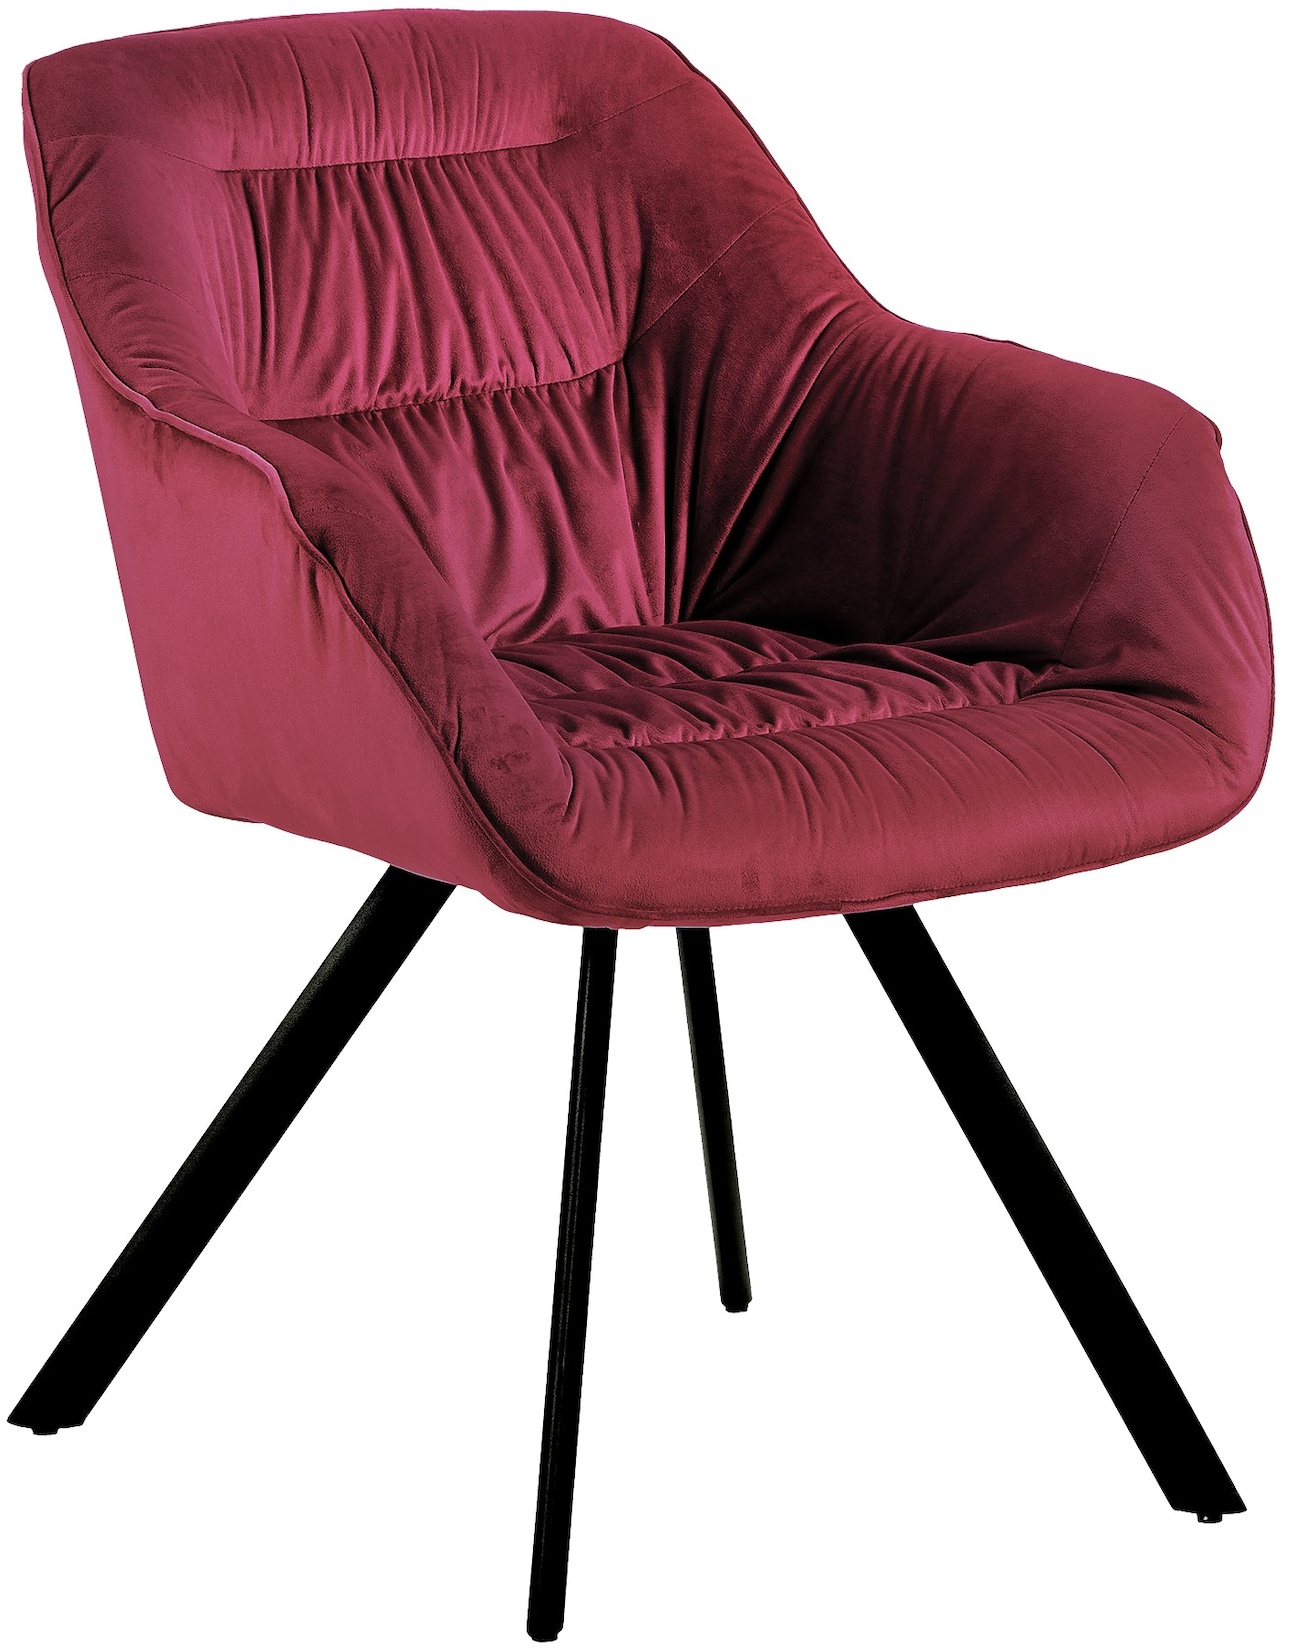 Moderne Esszimmerstühle - schicke Esstischstühle in Velvetoptik gepolsterte Stühle für Wohn- und Esszimmer